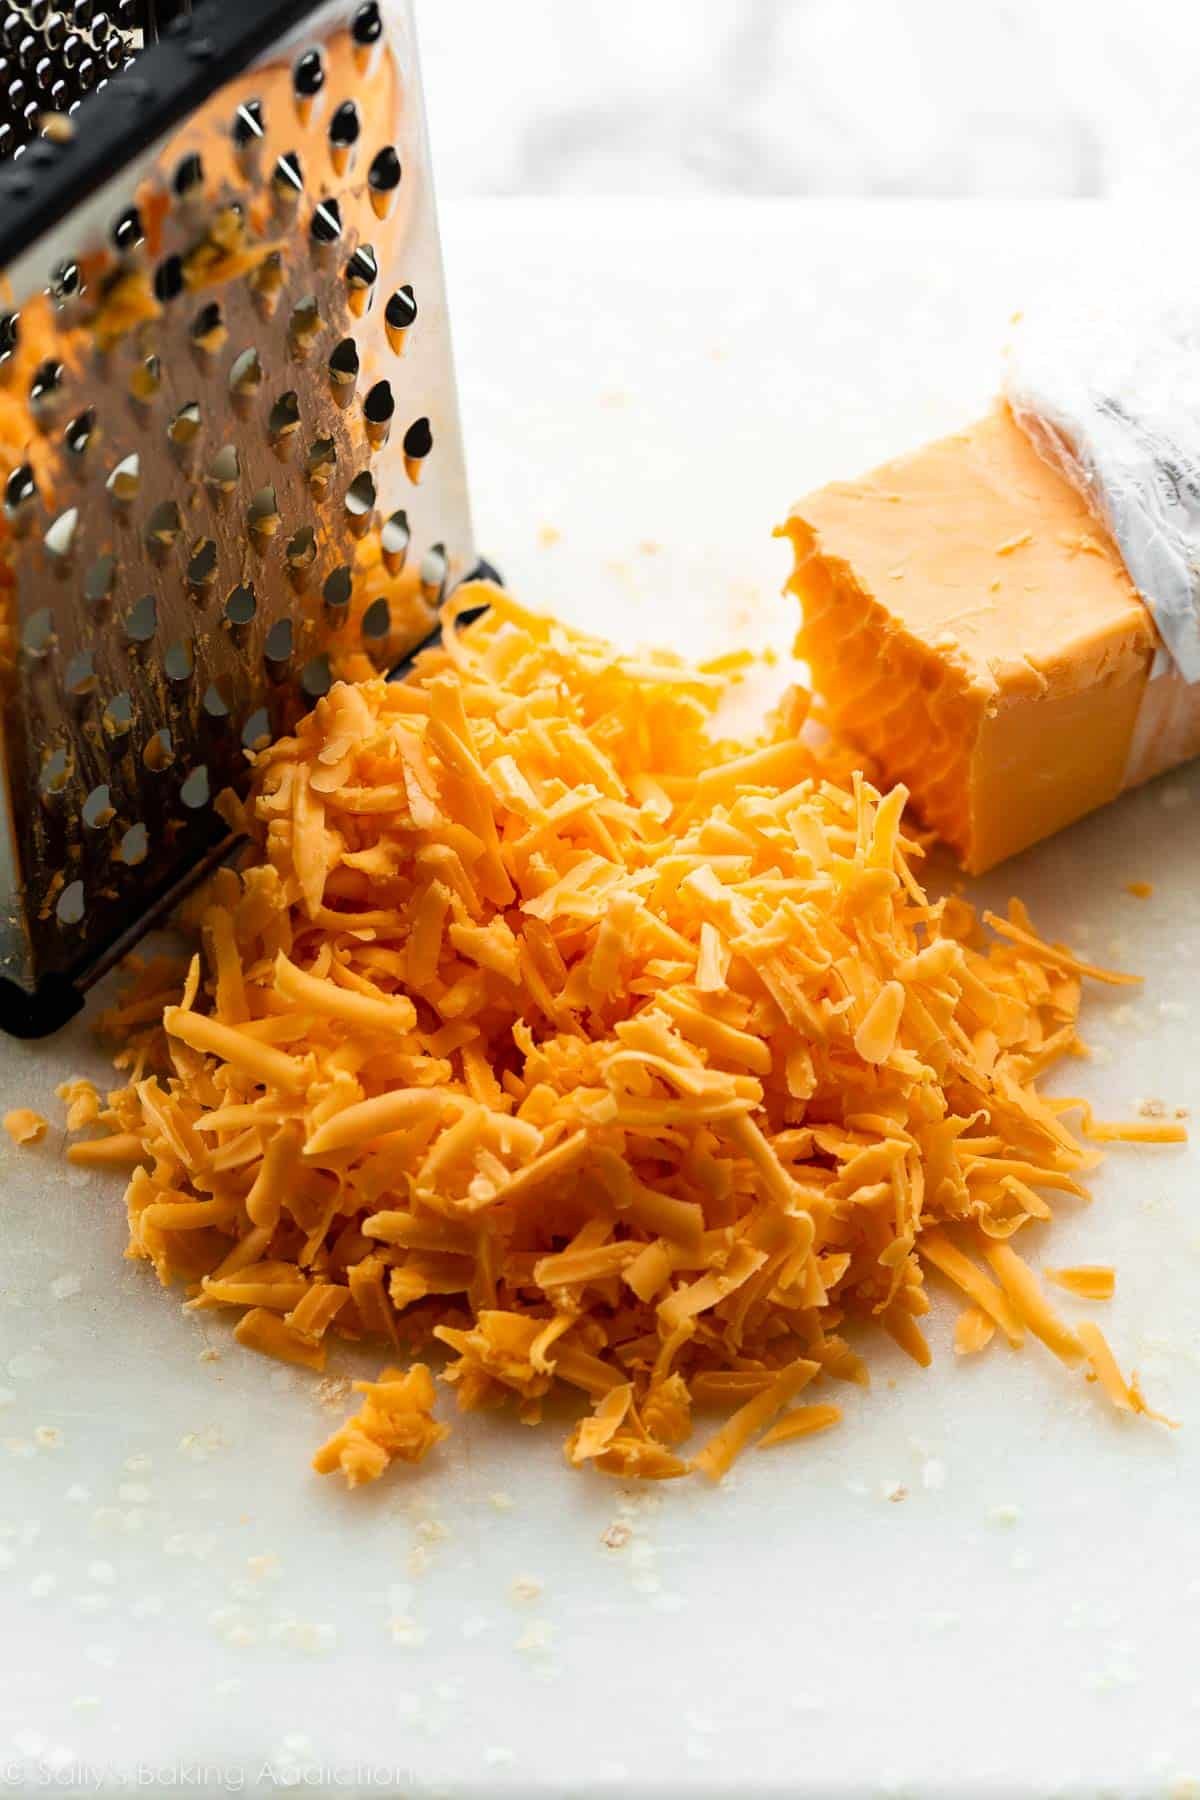 shredded cheddar cheese on white cutting board.